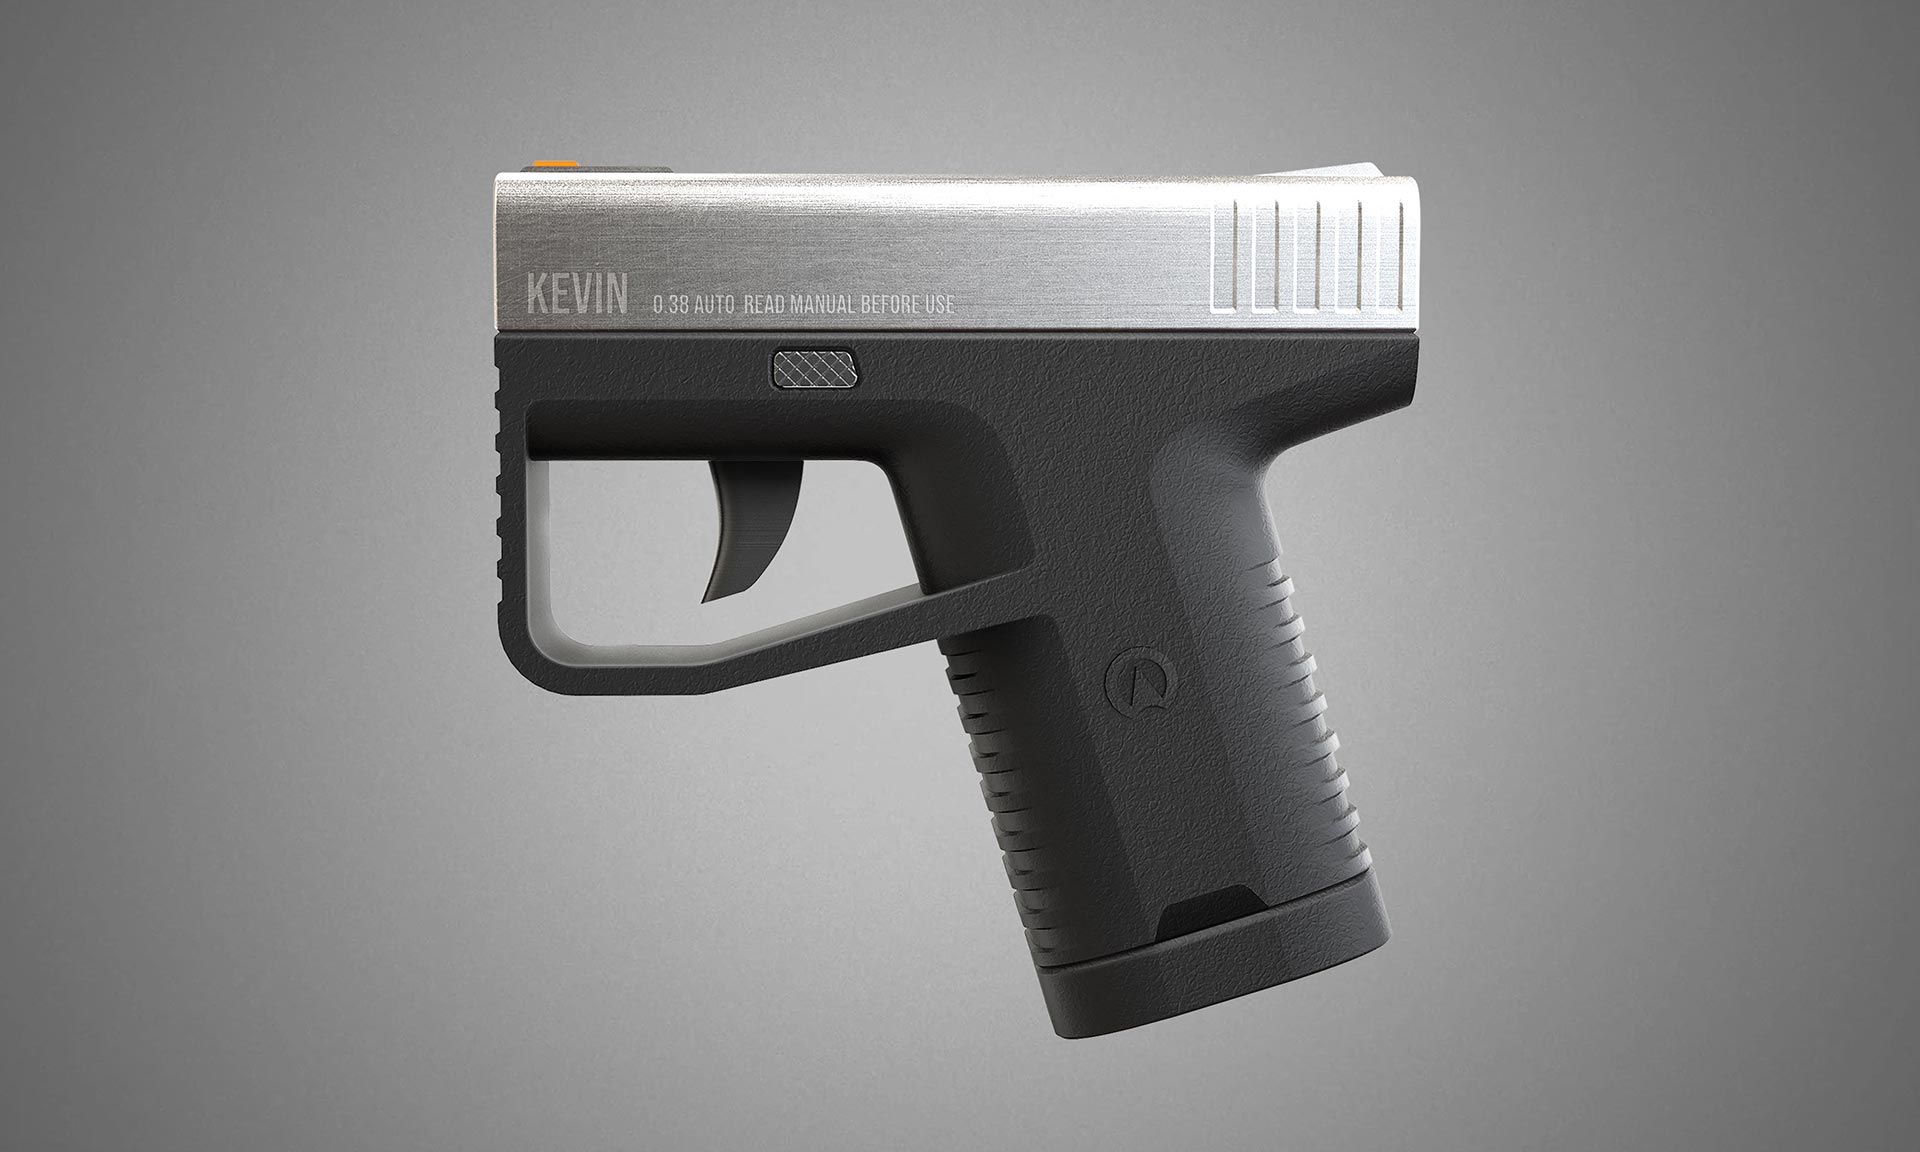 Prokop Strnka navrhl moderní pistoli Kevin určenou pro sebeobranu